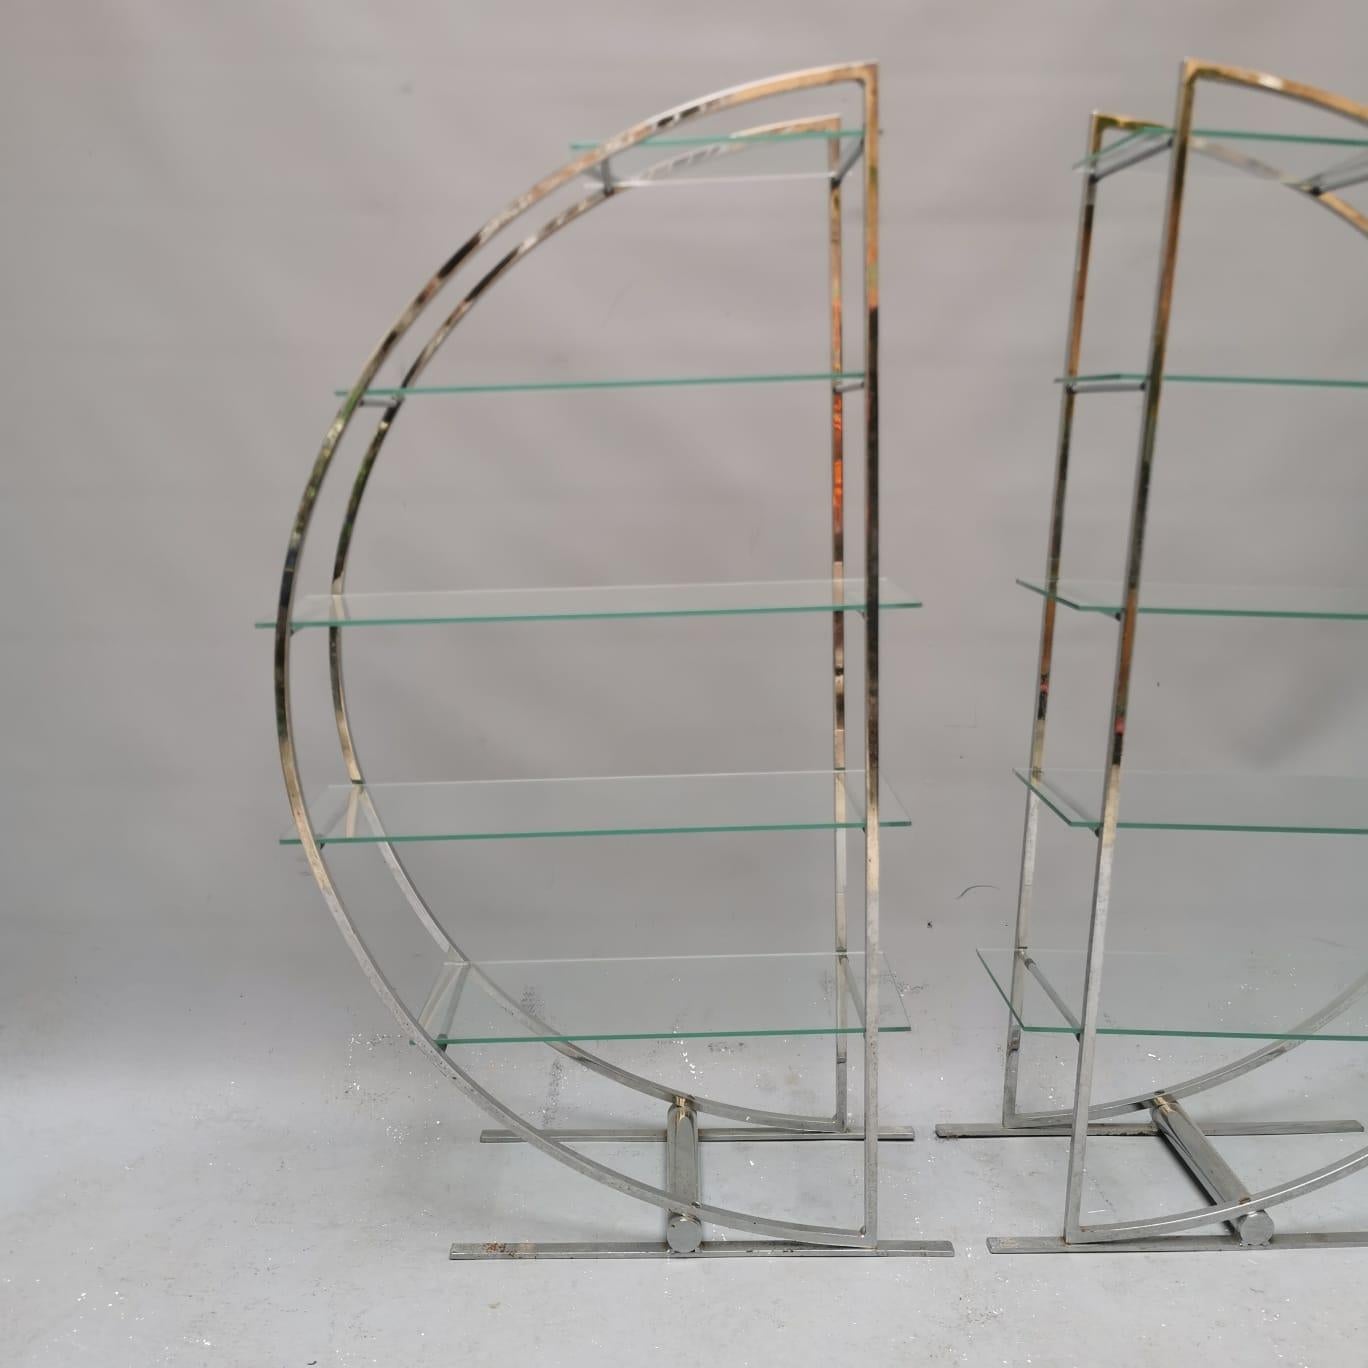 Ein Paar Bücherregale aus Stahl und Glas mit einem sehr markanten Design. Inspiriert von der funktionalistischen Ästhetik der 1930er Jahre soll dieses Objekt aus den 60er oder 70er Jahren stammen. Perfekt für alle, die einen strengen,